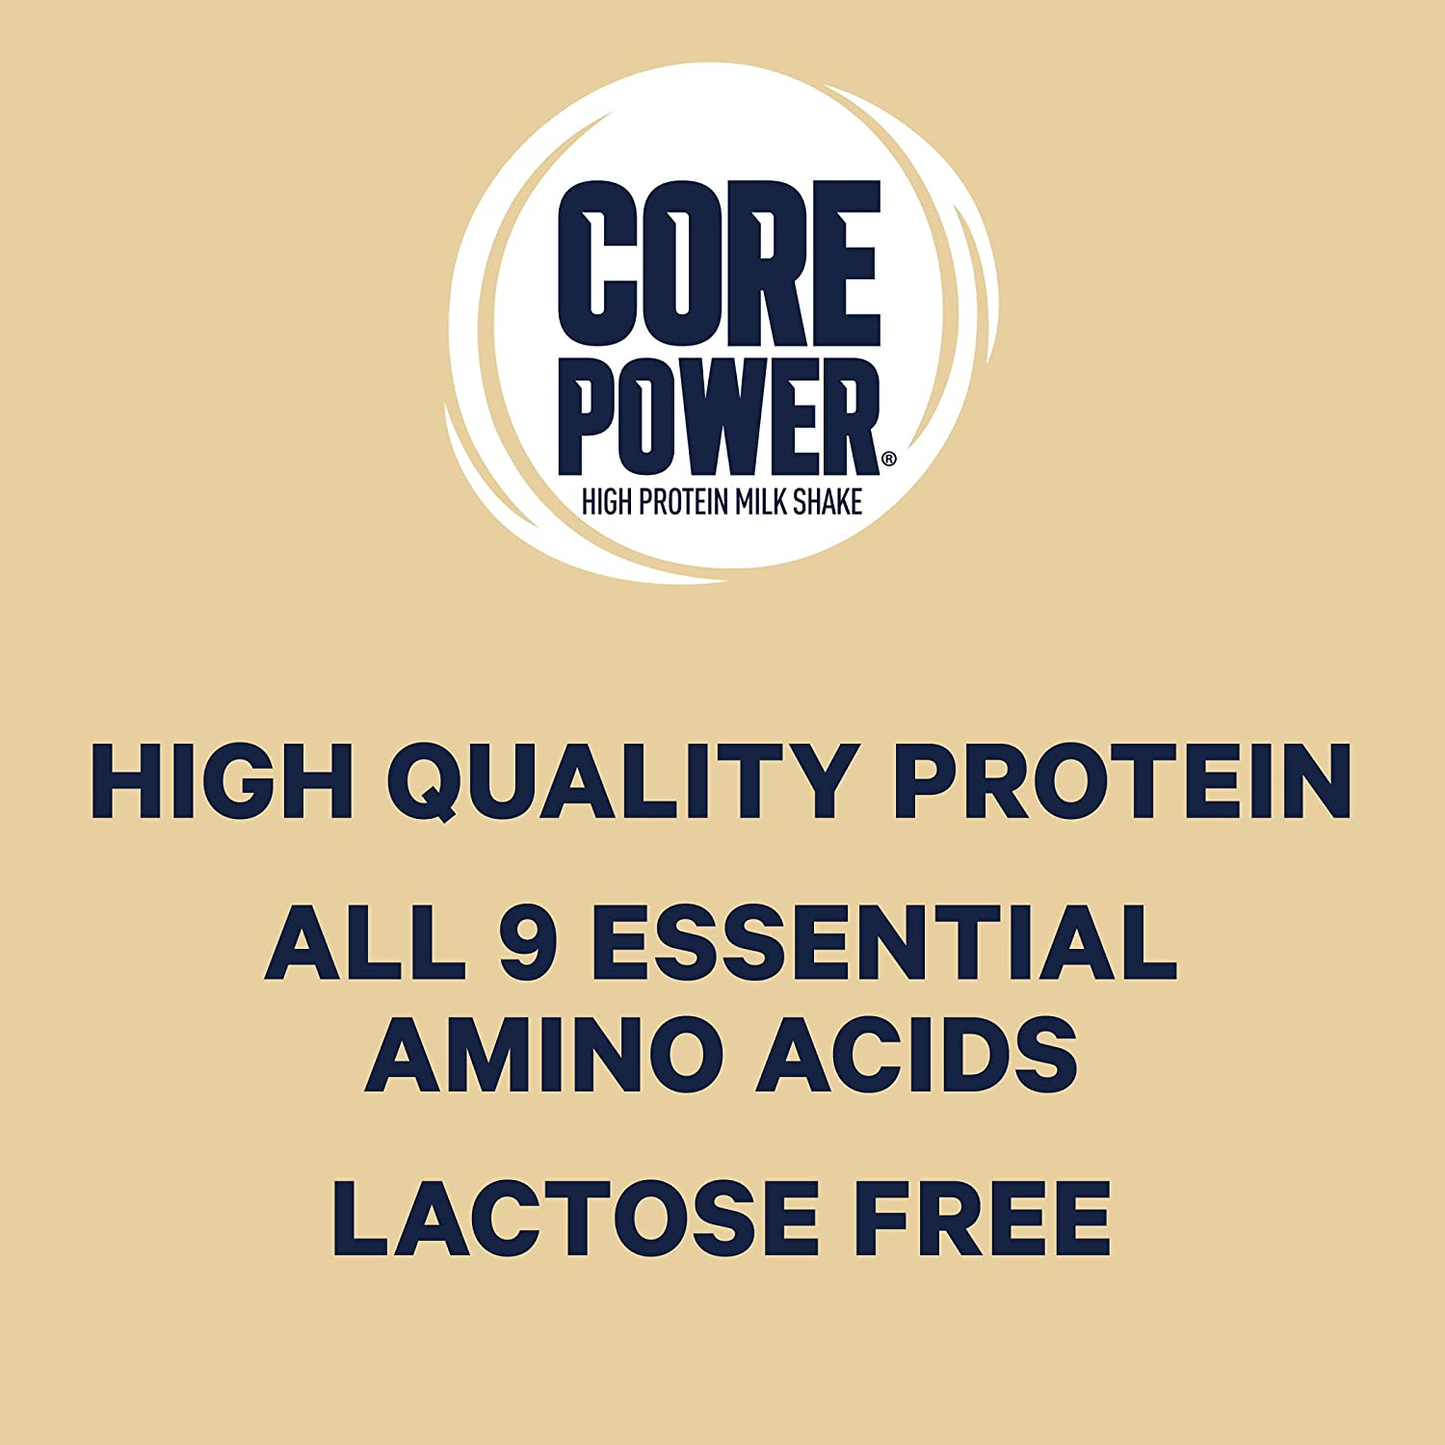 Core Power High Protein Milk Shake, Vanilla, 14 Fl Oz